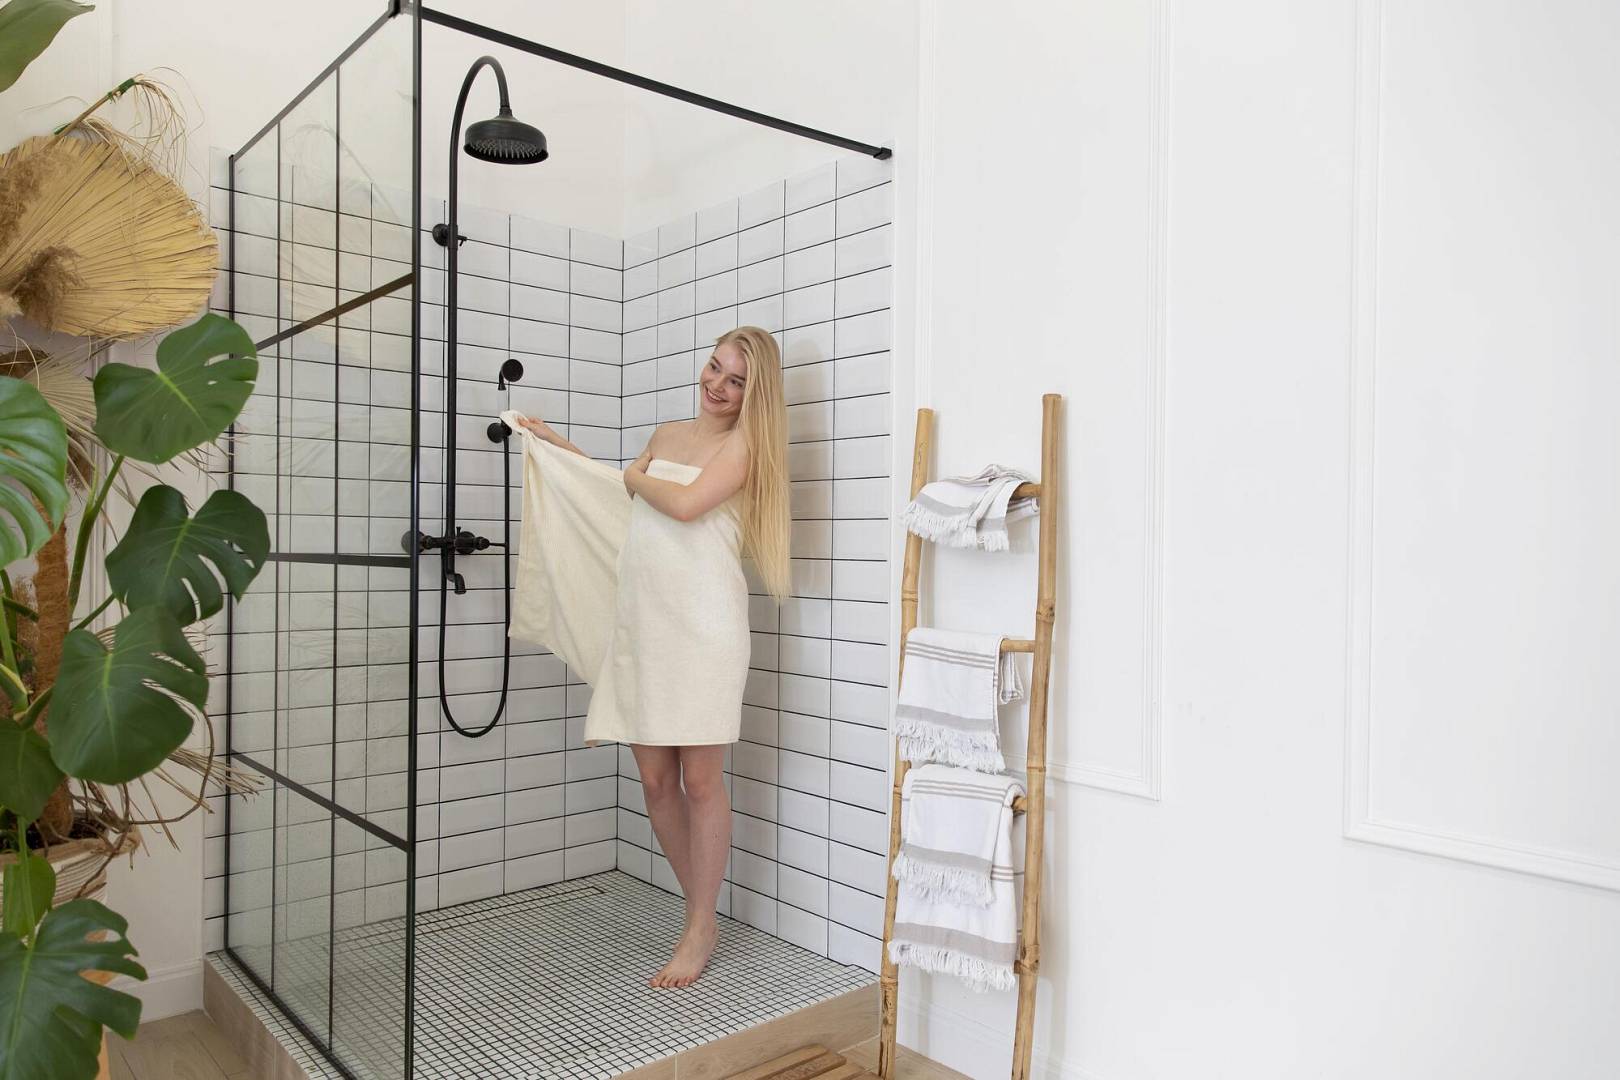 Cu rigola pentru duș walk-in, vei avea o baie modernă și practică